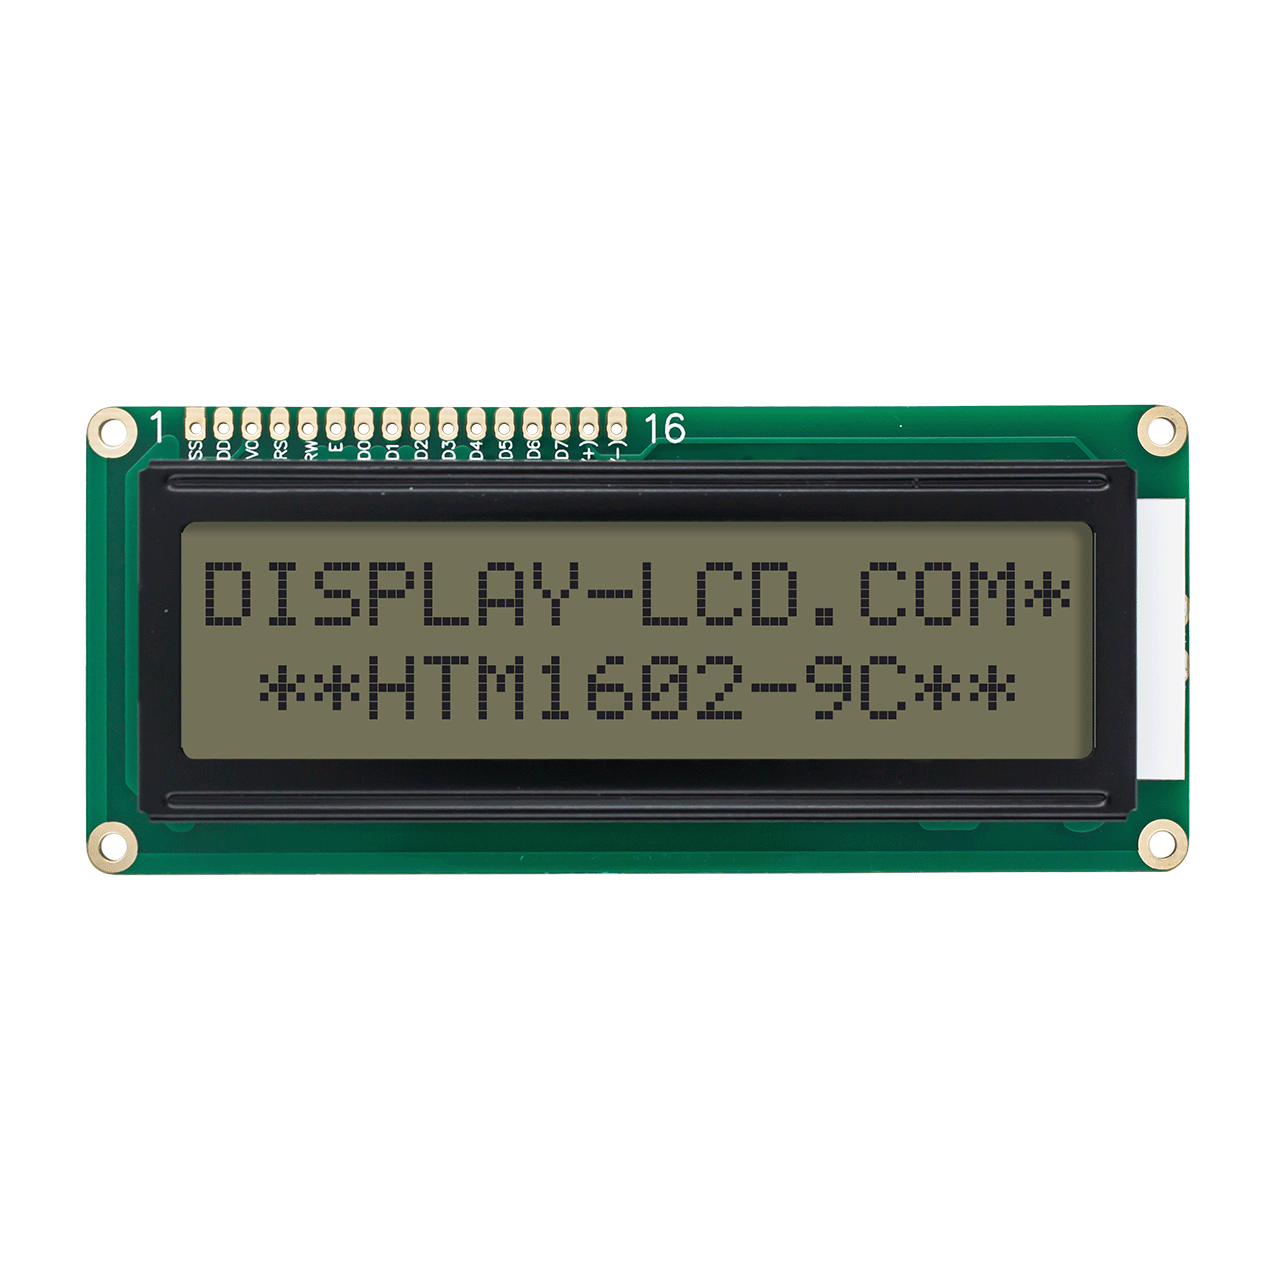 2X16 字符液晶模组显示屏 FSTN+ 带白色背光 5.0V-Arduino